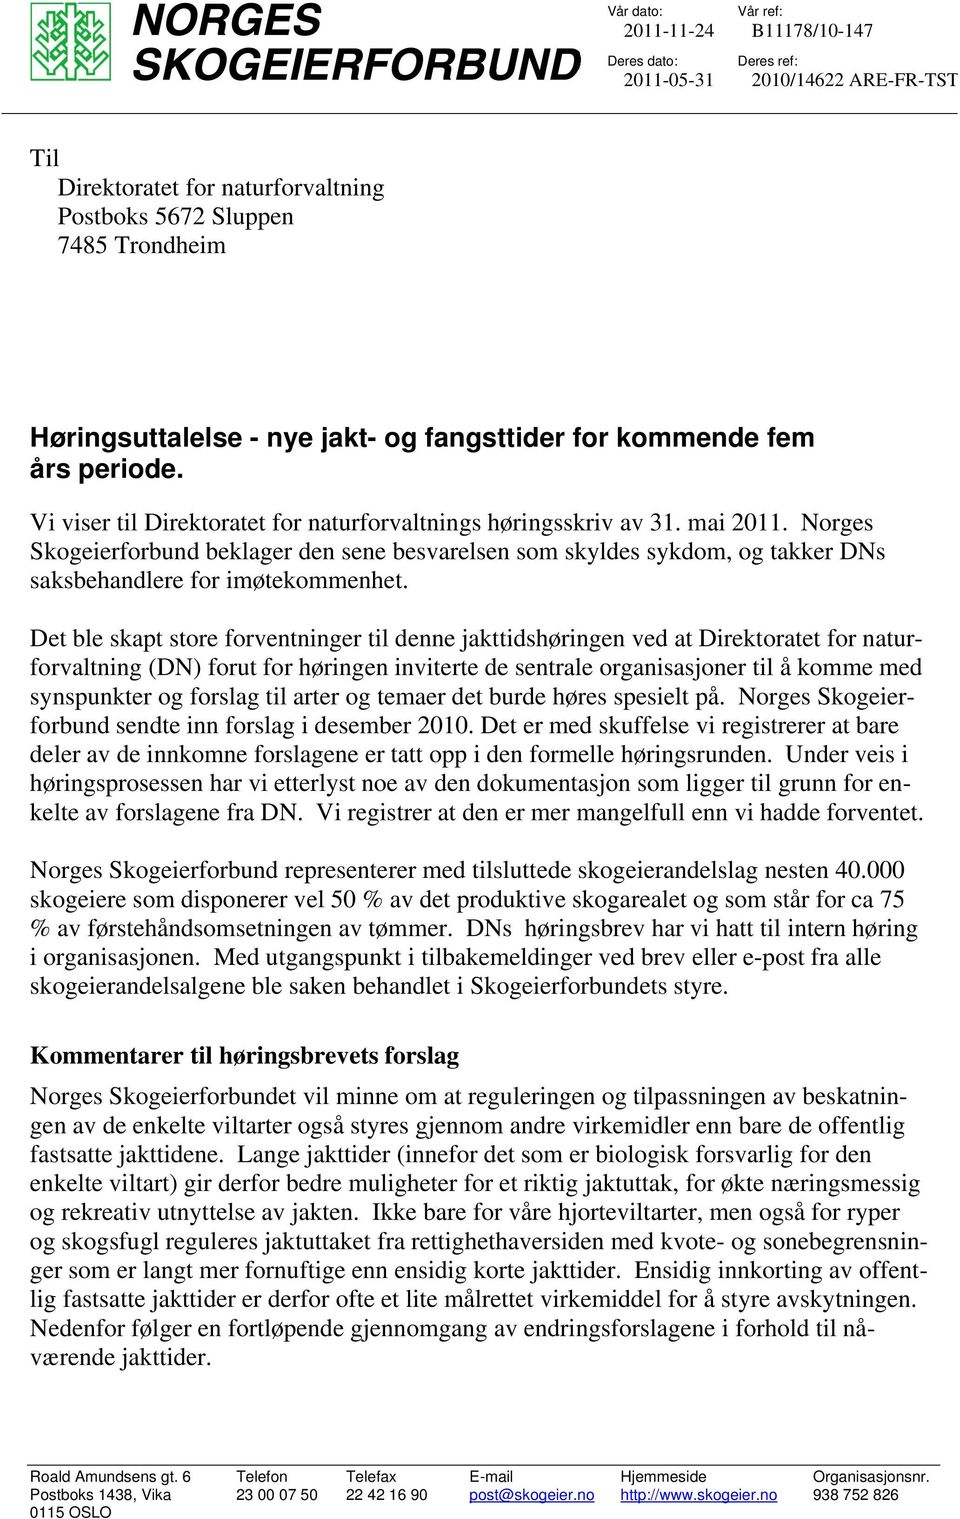 Norges Skogeierforbund beklager den sene besvarelsen som skyldes sykdom, og takker DNs saksbehandlere for imøtekommenhet.